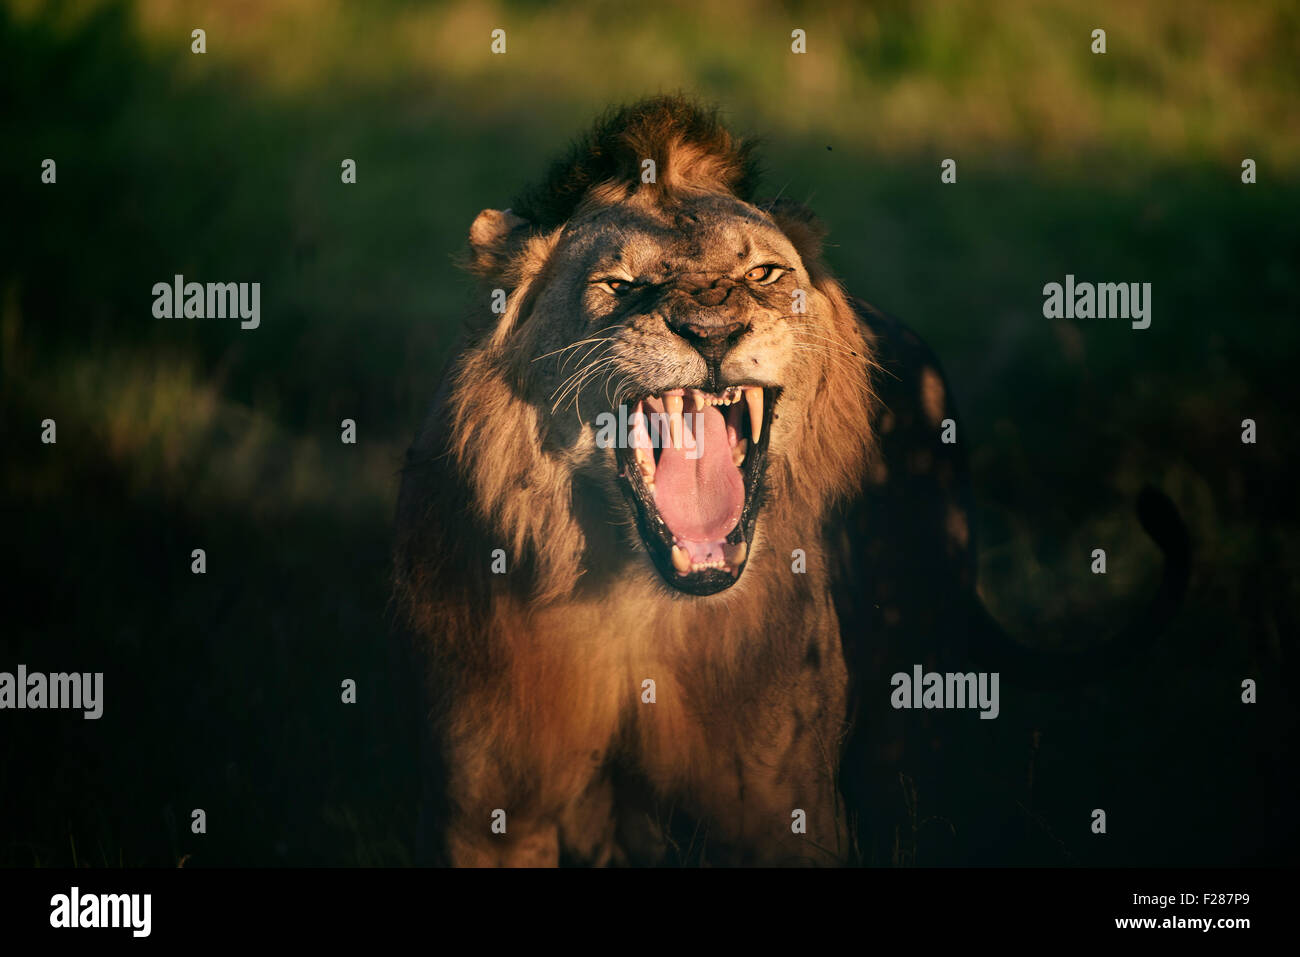 Jeune lion (Panthera leo), montrant ses dents avec une attitude agressive, en fin de soirée, la lumière, le Kenya Tsavo Ouest Banque D'Images